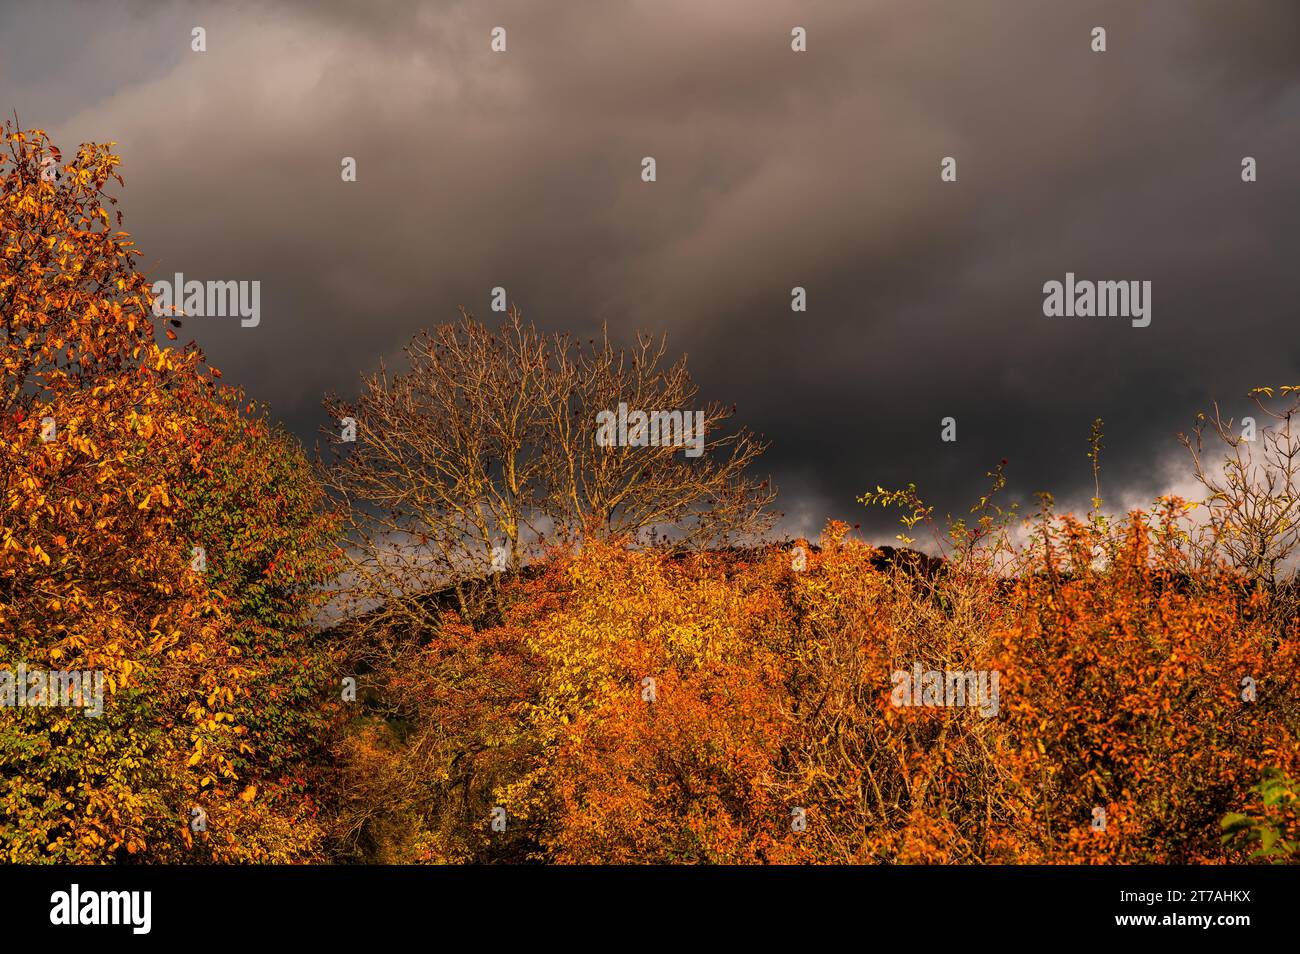 Buntes Herbstblatt auf dem Baum im Kontrast zum dunklen bedrohlichen stürmischen Himmel. Dramatische Aussicht. Stockfoto